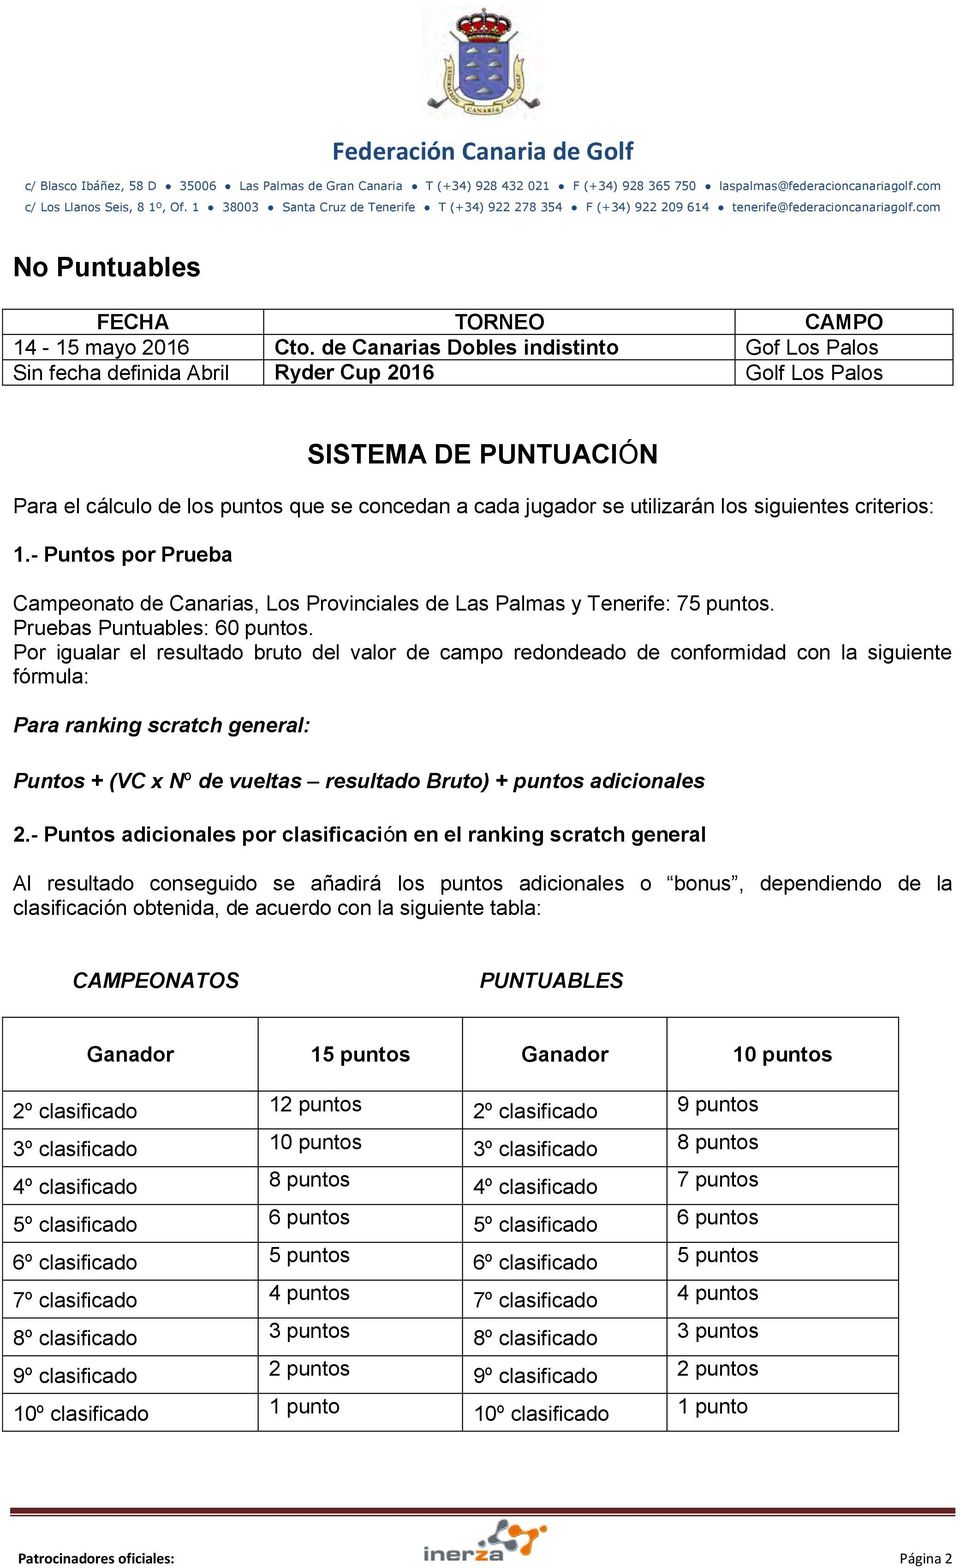 siguientes criterios: 1.- Puntos por Prueba Campeonato de Canarias, Los Provinciales de Las Palmas y Tenerife: 75 puntos. Pruebas Puntuables: 60 puntos.